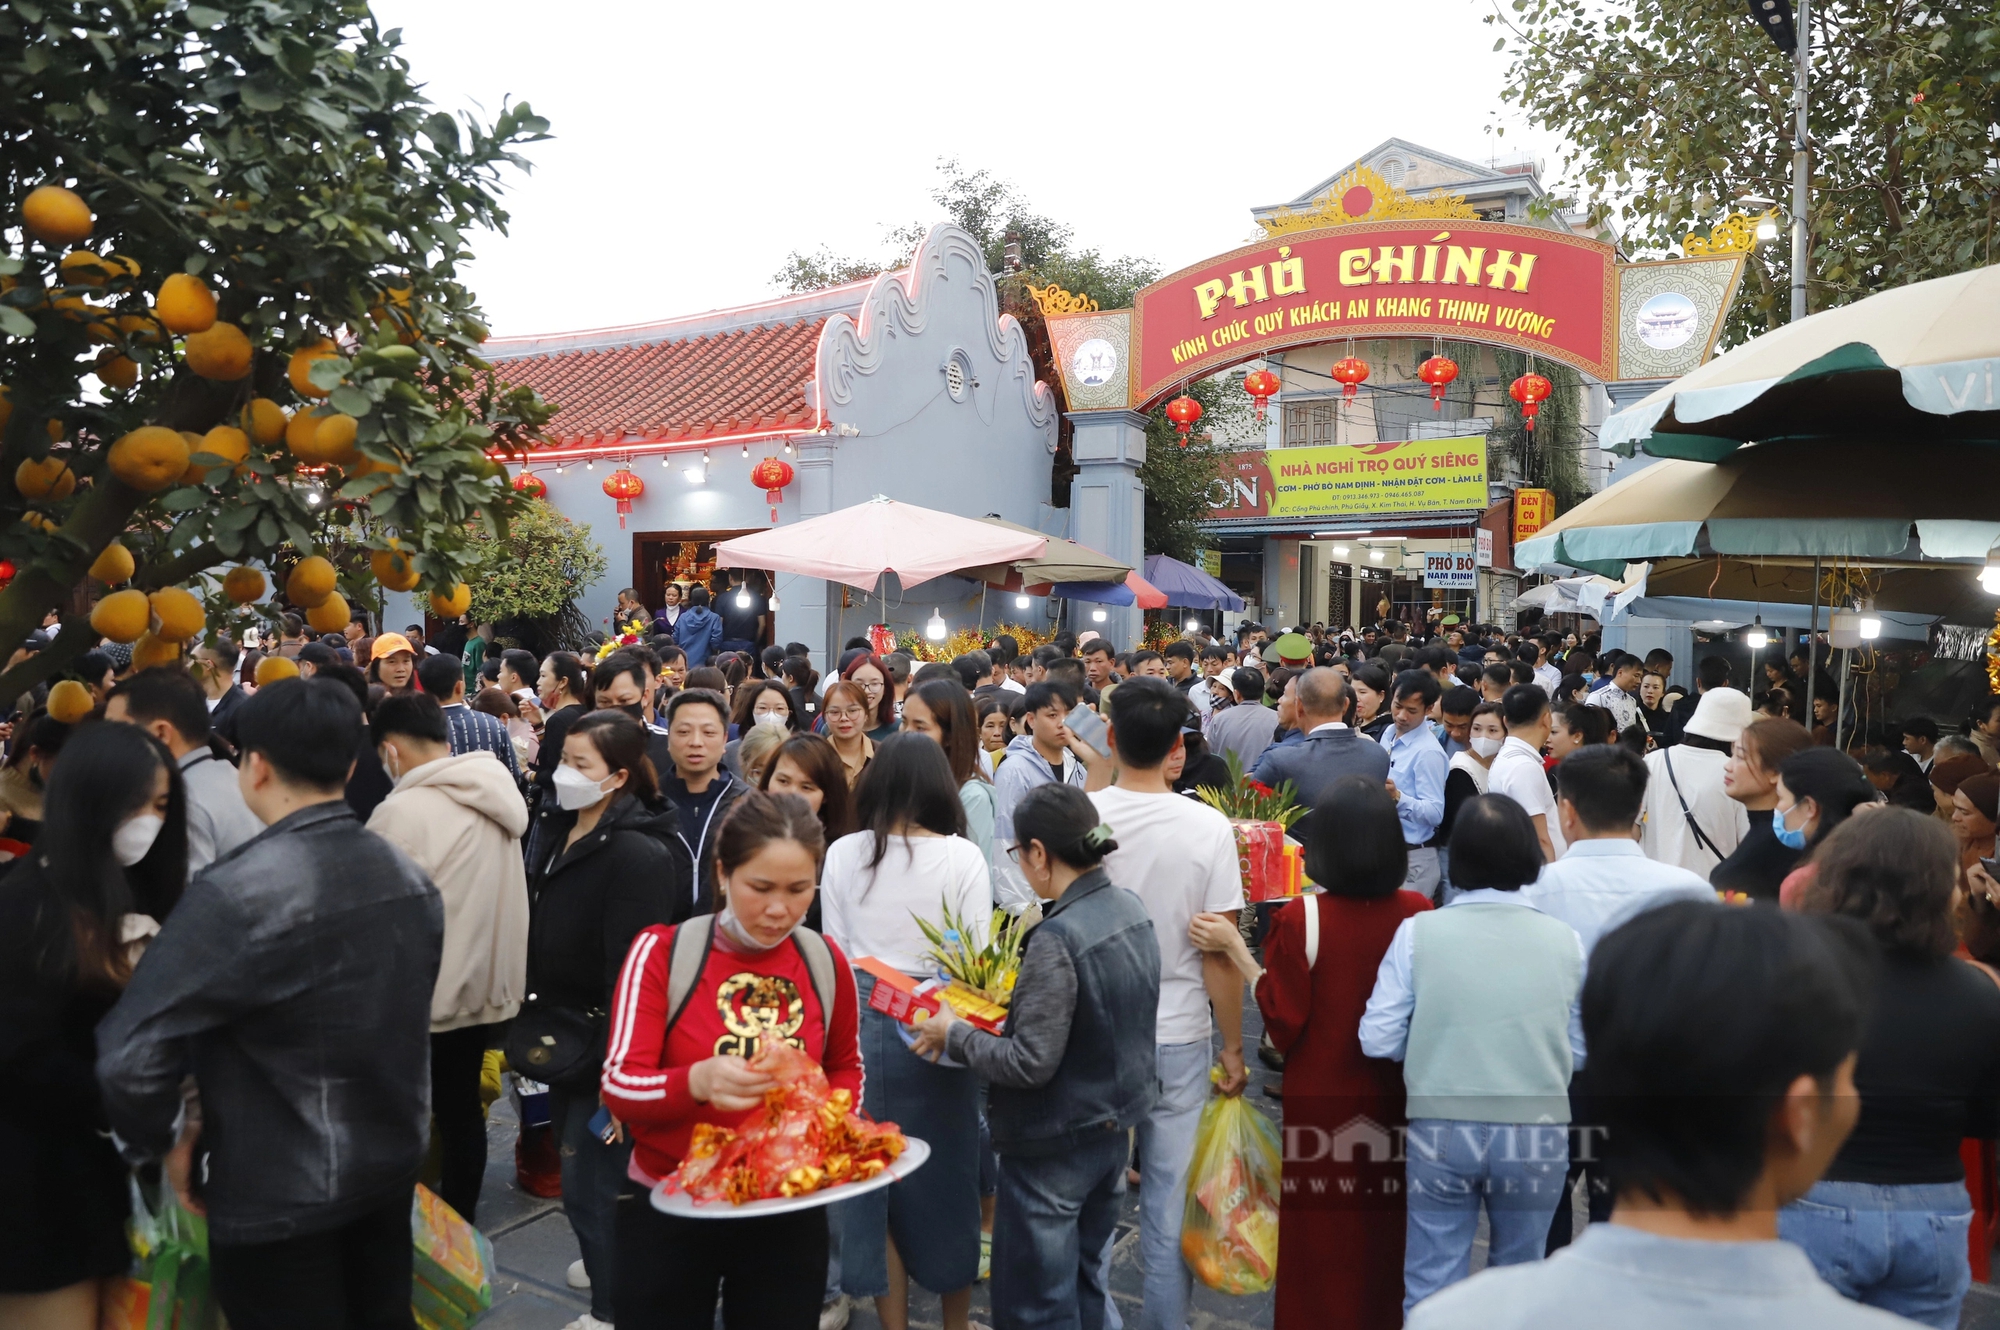 Phí đổi tiền lẻ lên tới 18%, thịt bò giá 250.000 đồng/kg tại chợ Viềng, Phủ Dầy Nam Định hút khách- Ảnh 1.